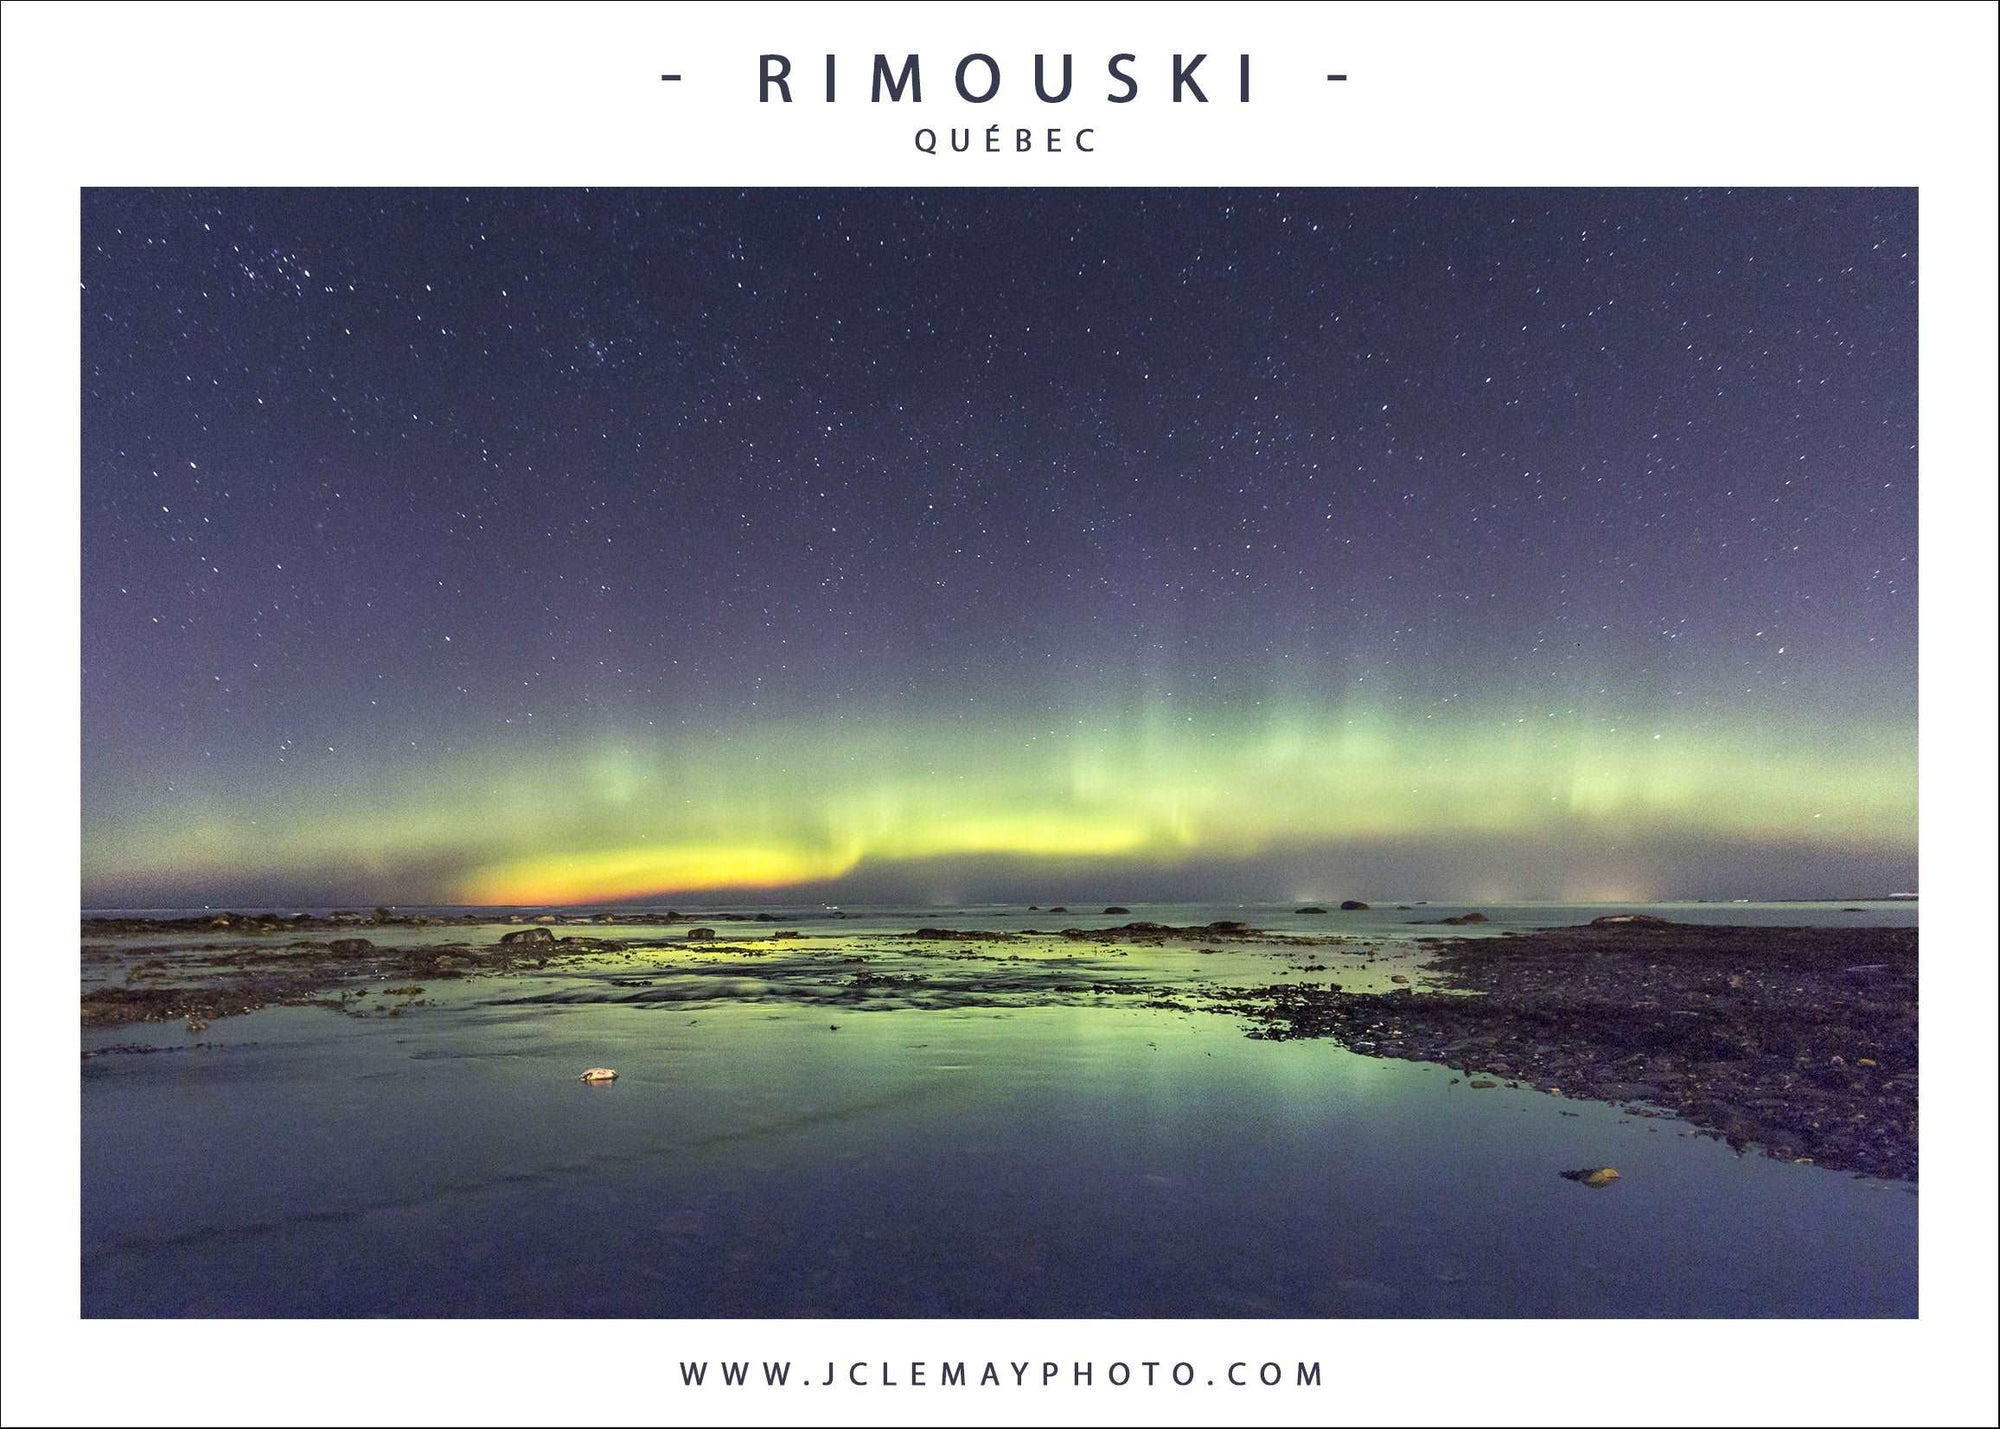 Carte postale d'une aurore boréale à Rimouski par Jc Lemay Photo